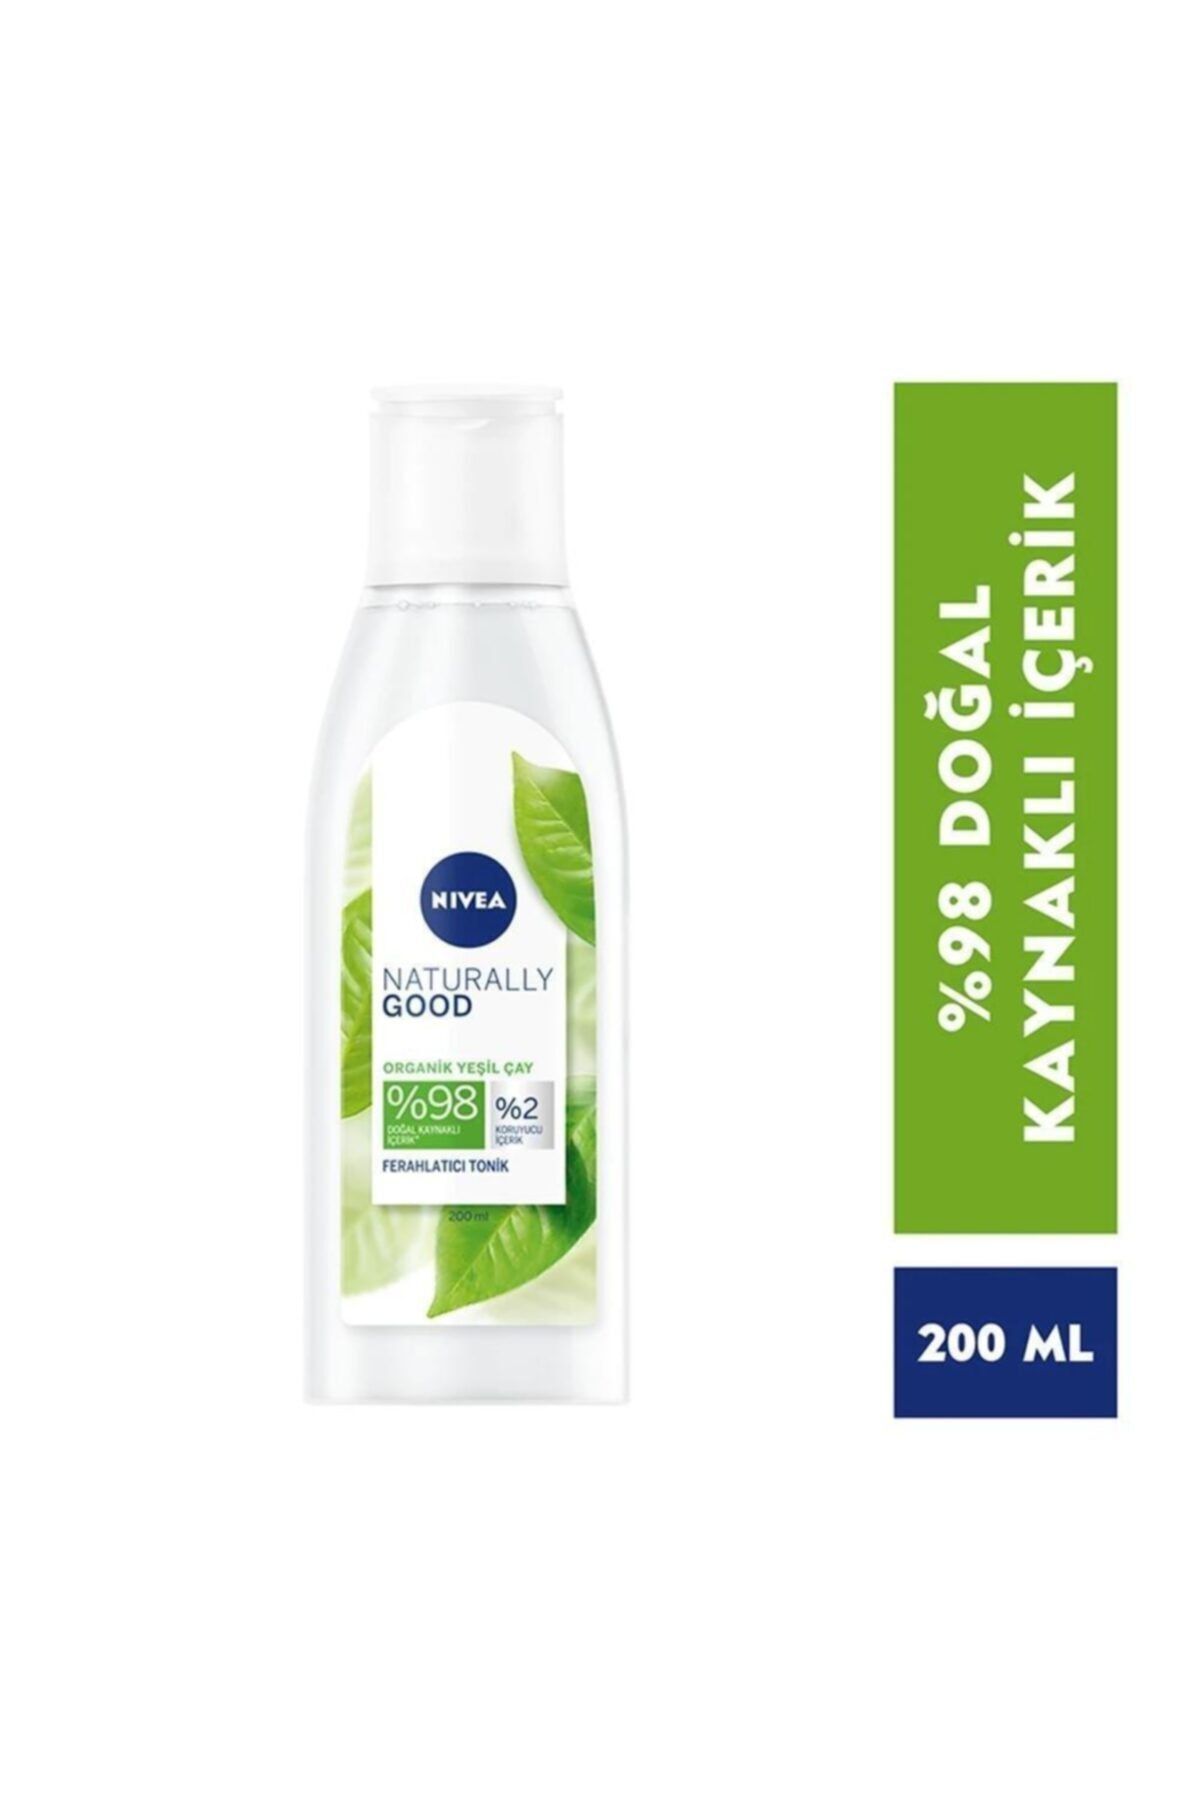 NIVEA Nıvea Organik Yeşilçay Özlü Ferahlatıcı Tonik 200 ml